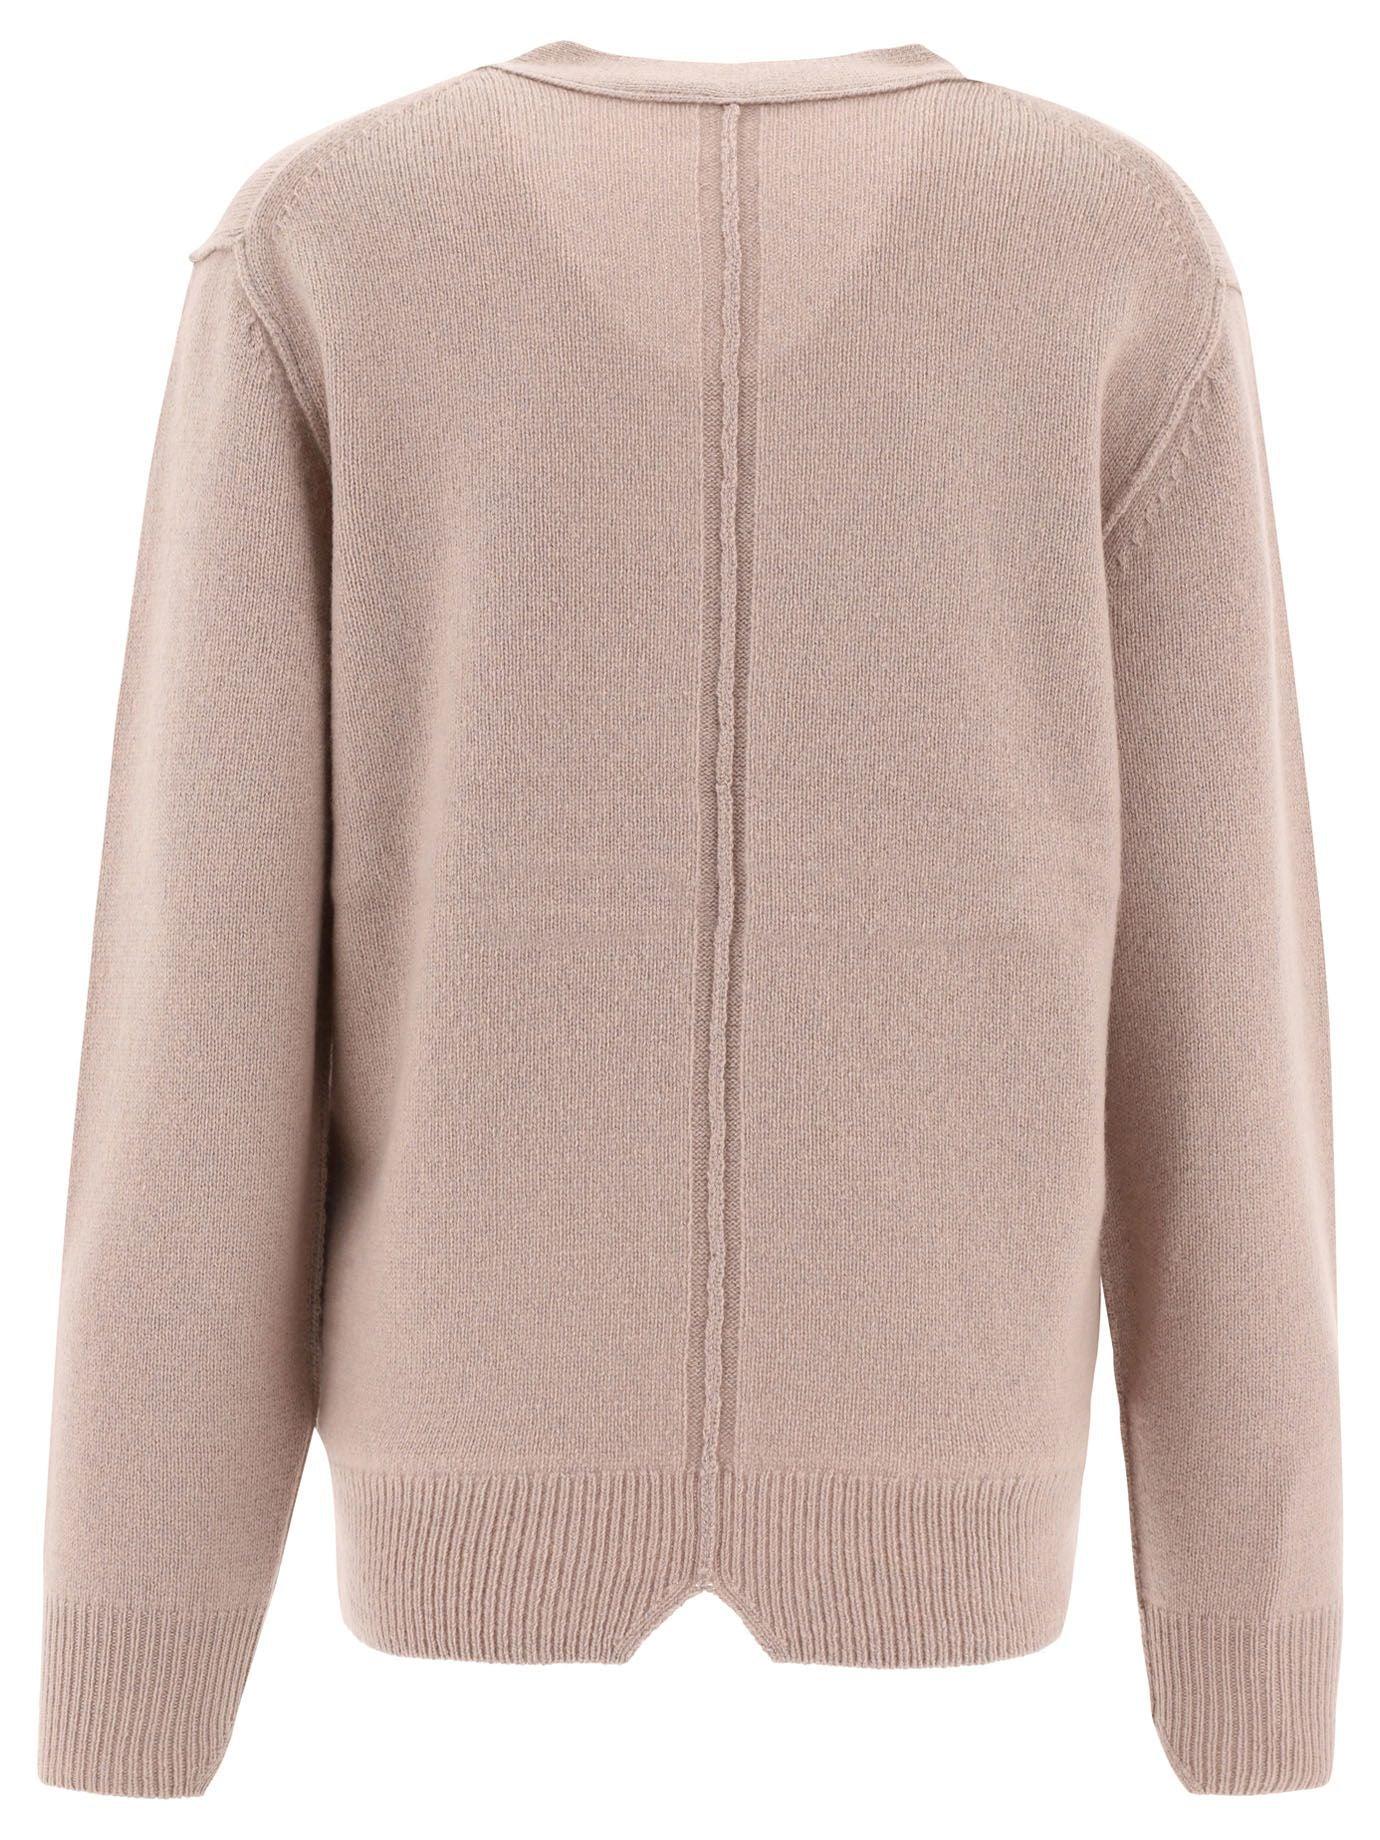 Acne Studios Women's Sweater in Pink | Lyst